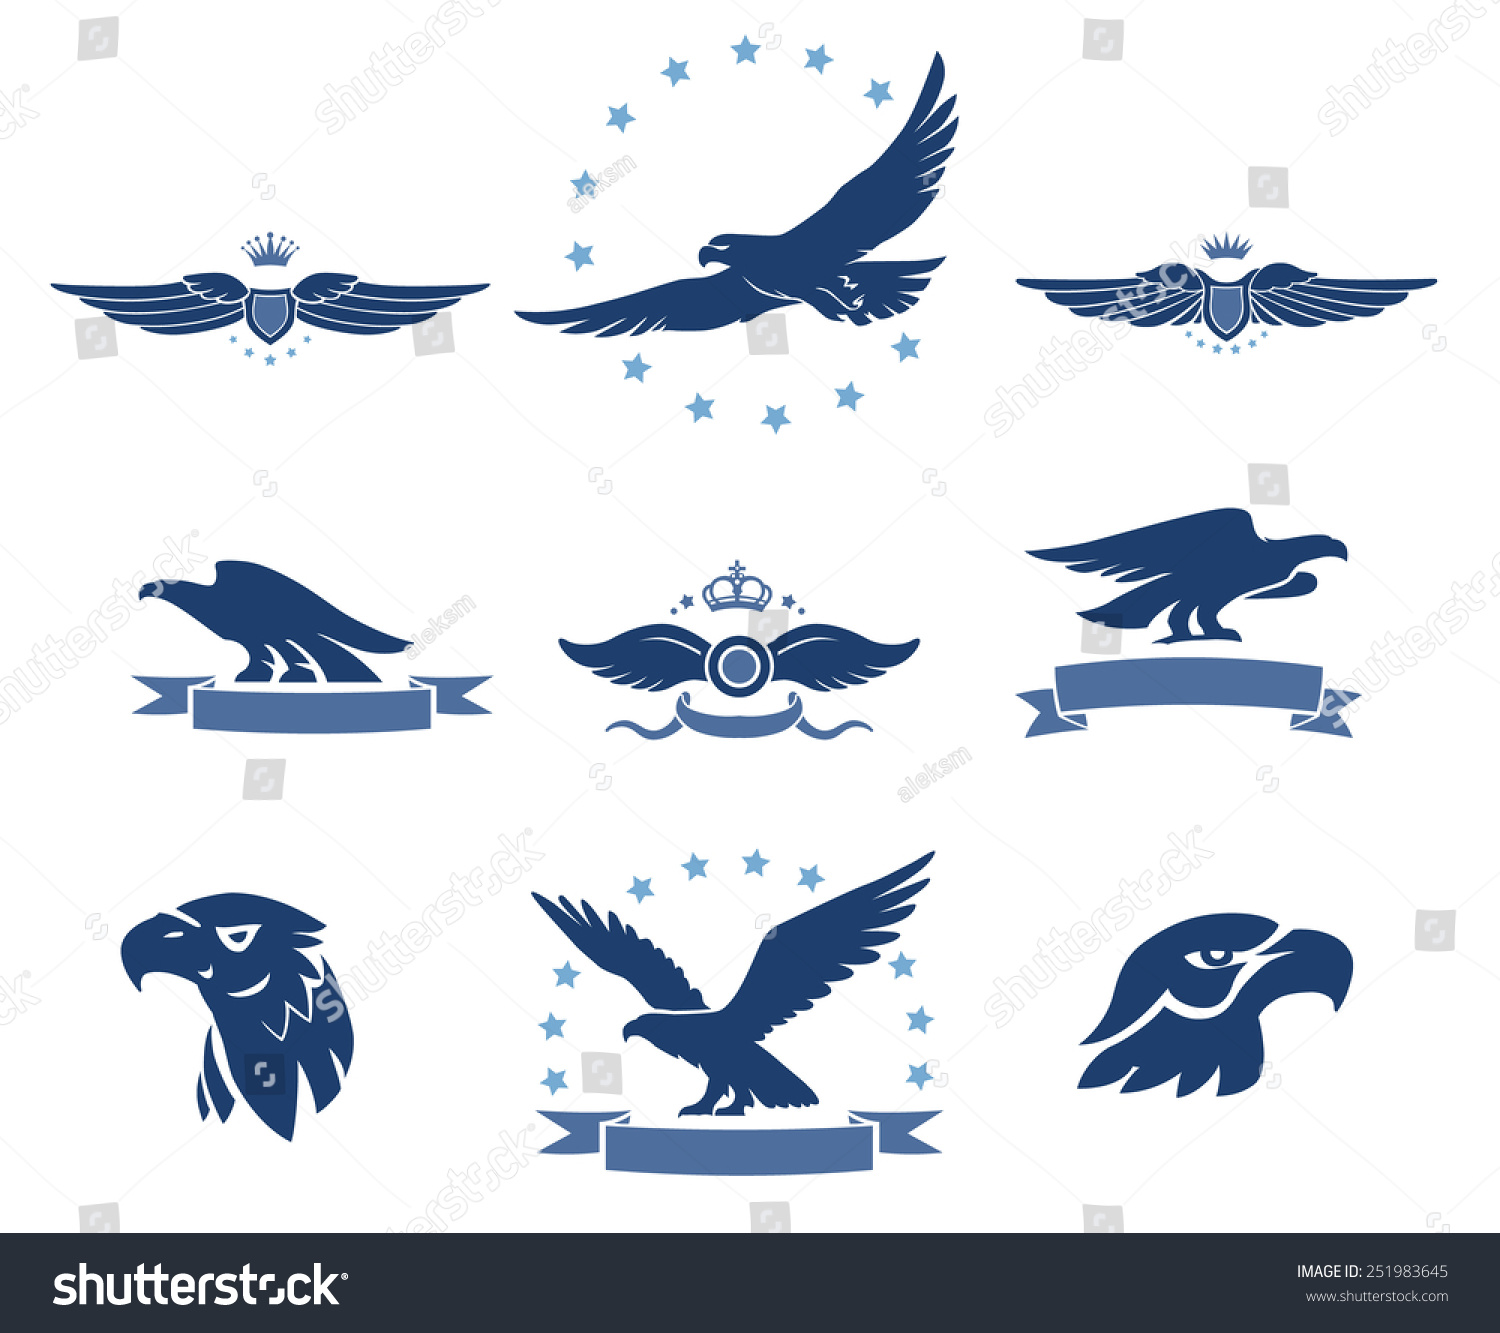 鹰轮廓和翅膀的标志-动物\/野生生物-海洛创意(